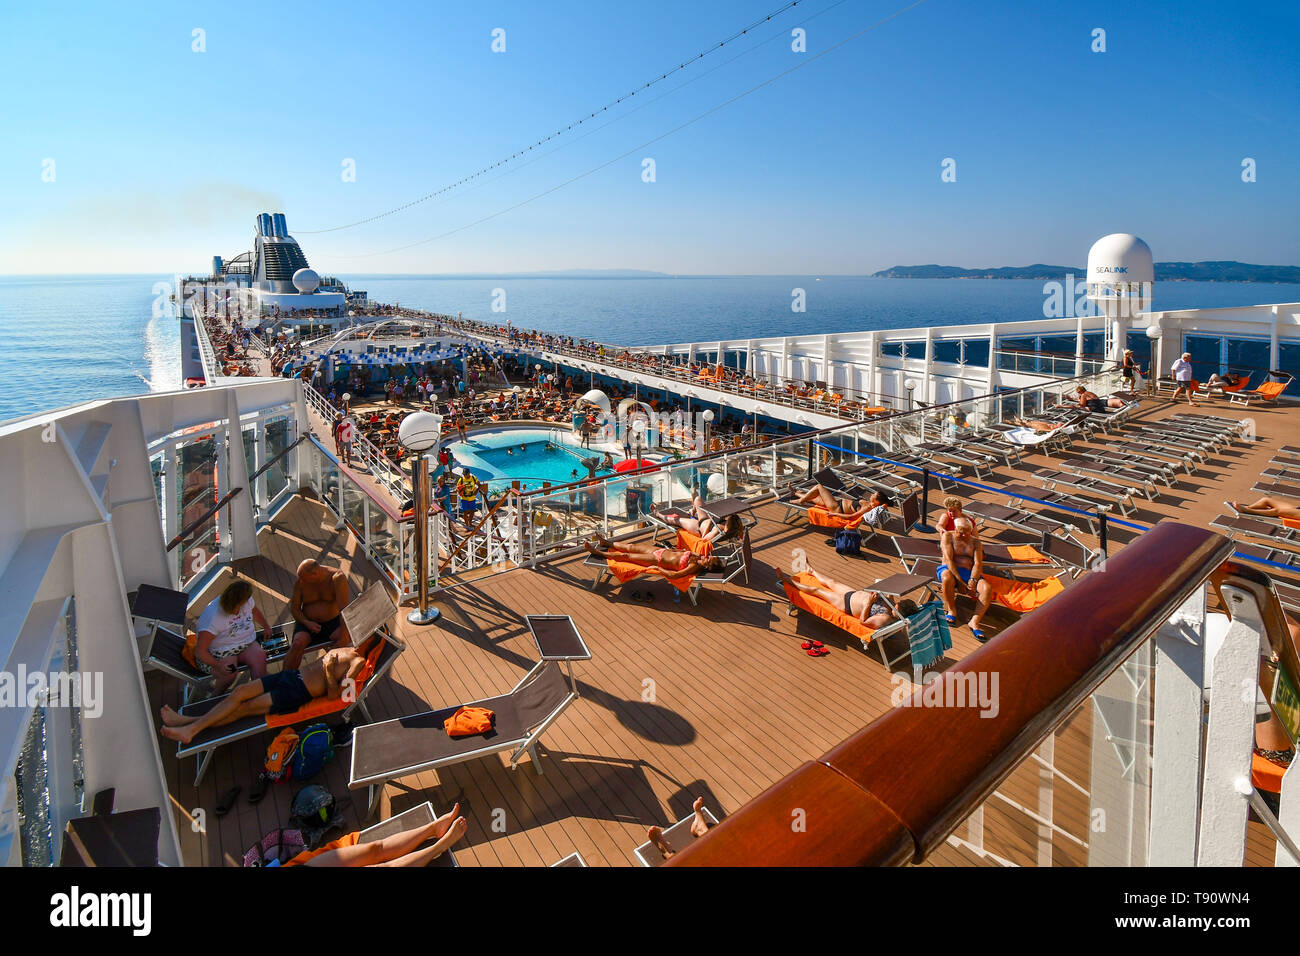 Ein grosses Kreuzfahrtschiff mit Touristen auf dem Deck Ansätze der Insel Korfu in Griechenland an einem Sommertag im Ionischen Meer. Stockfoto